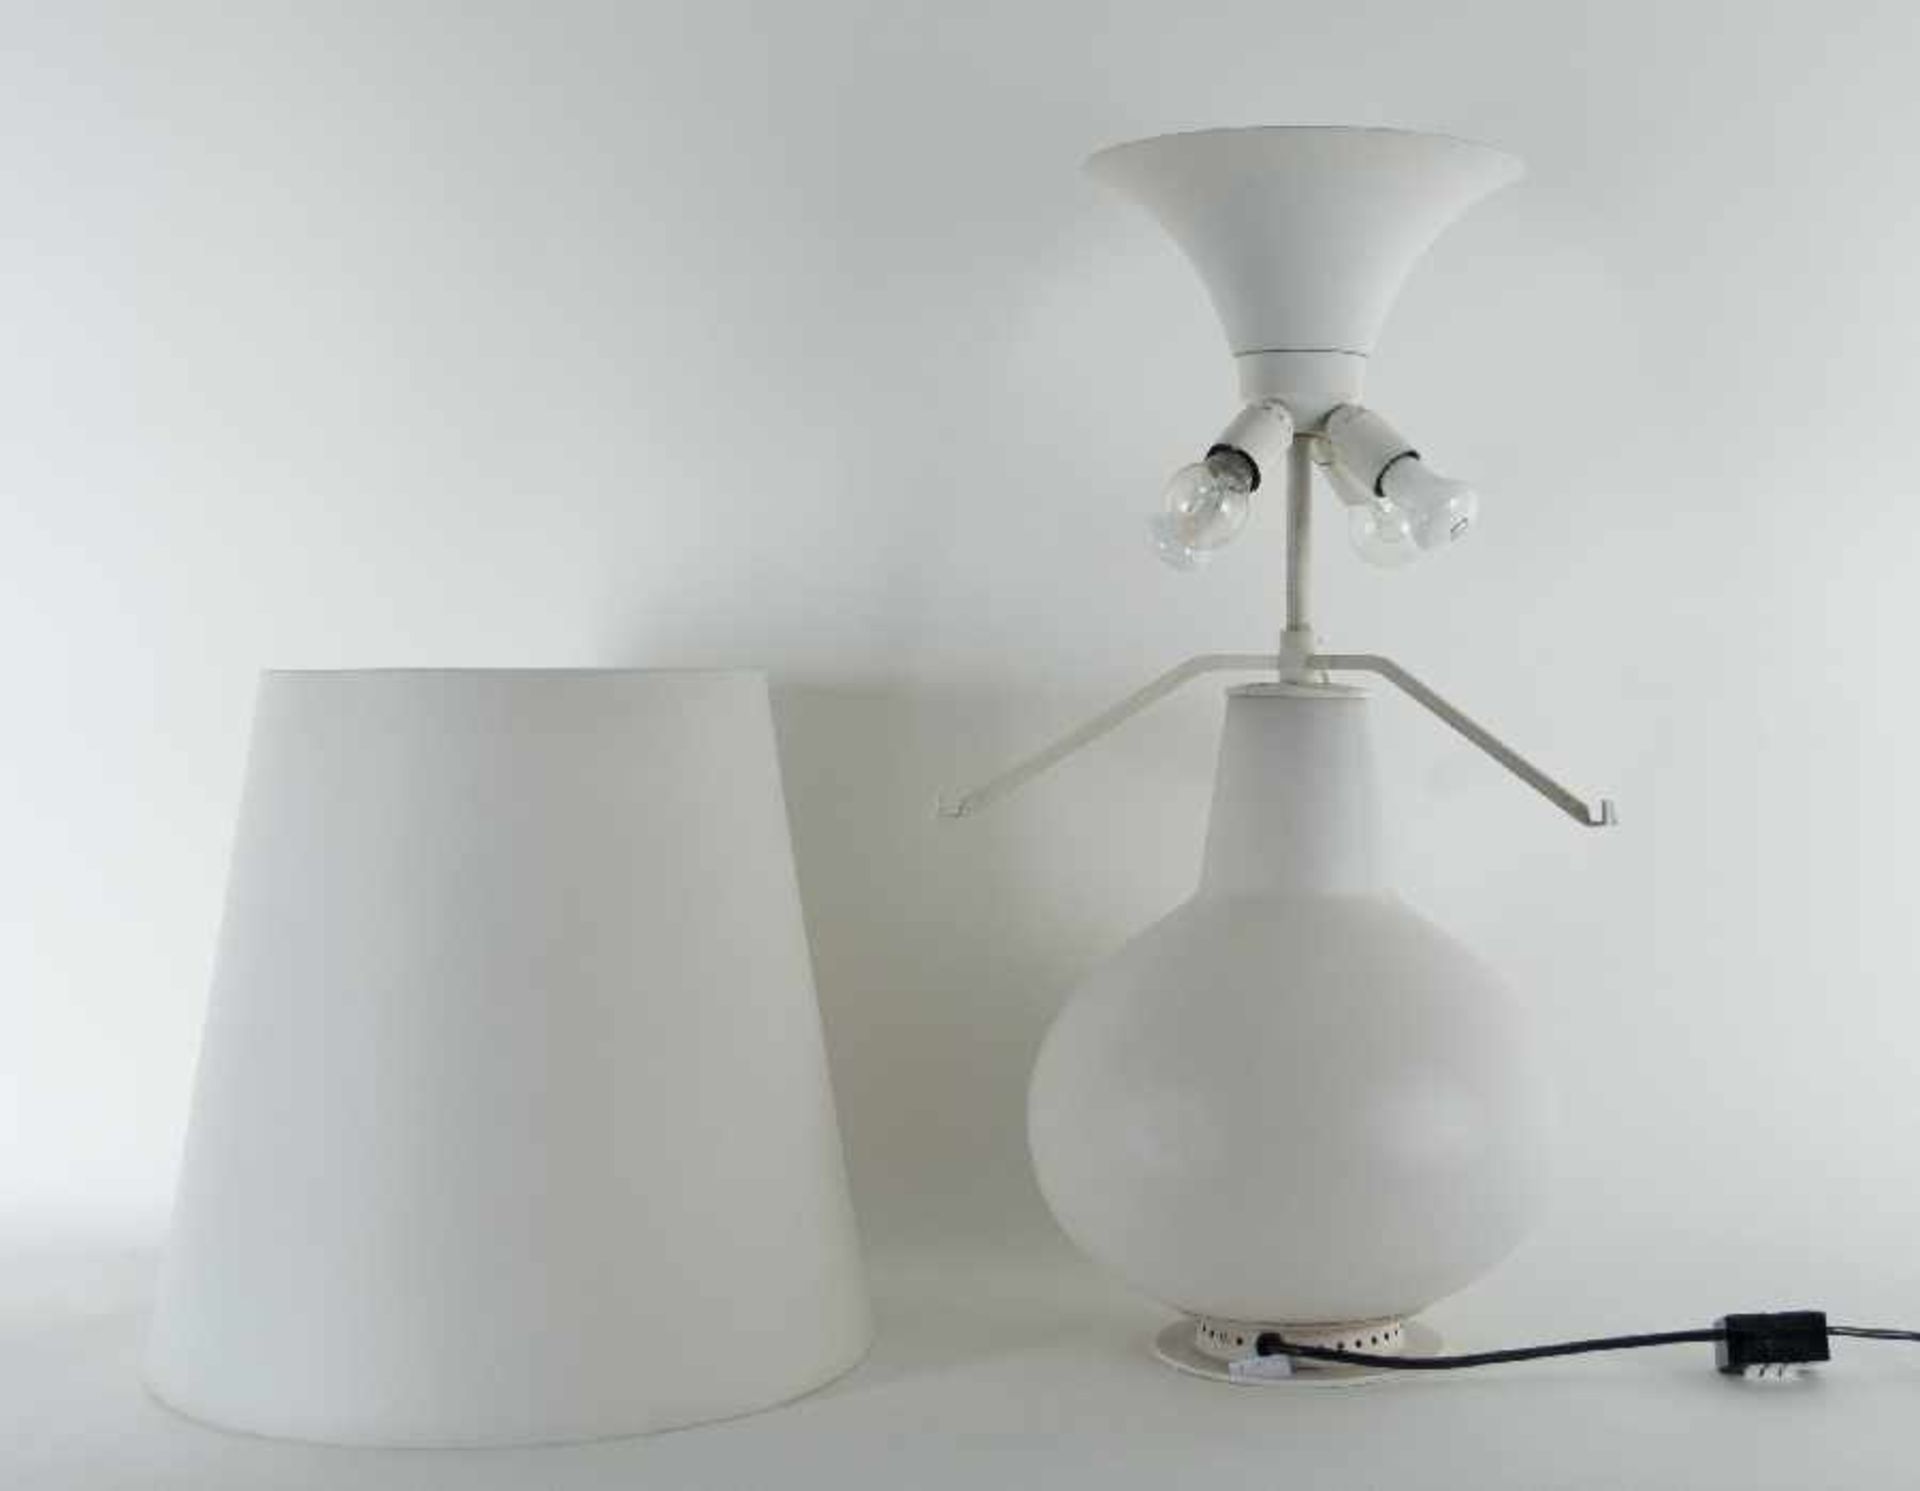 Max Ingrand1908 in Bressuire - 1969 ParisTischlampe "Fontana" Modell 1853Milchglas und Metall, - Bild 2 aus 3